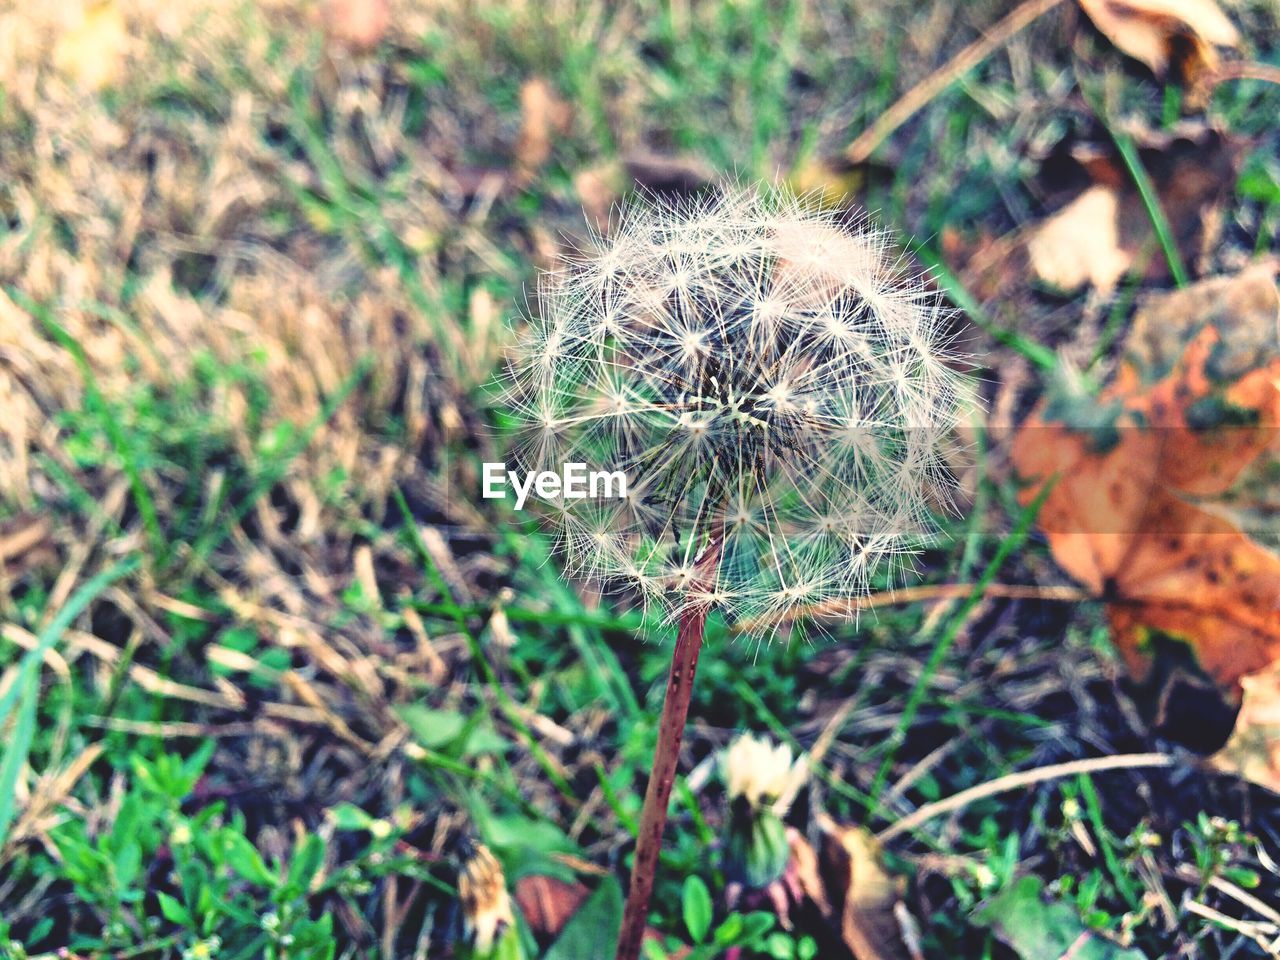 Dandelion on grass